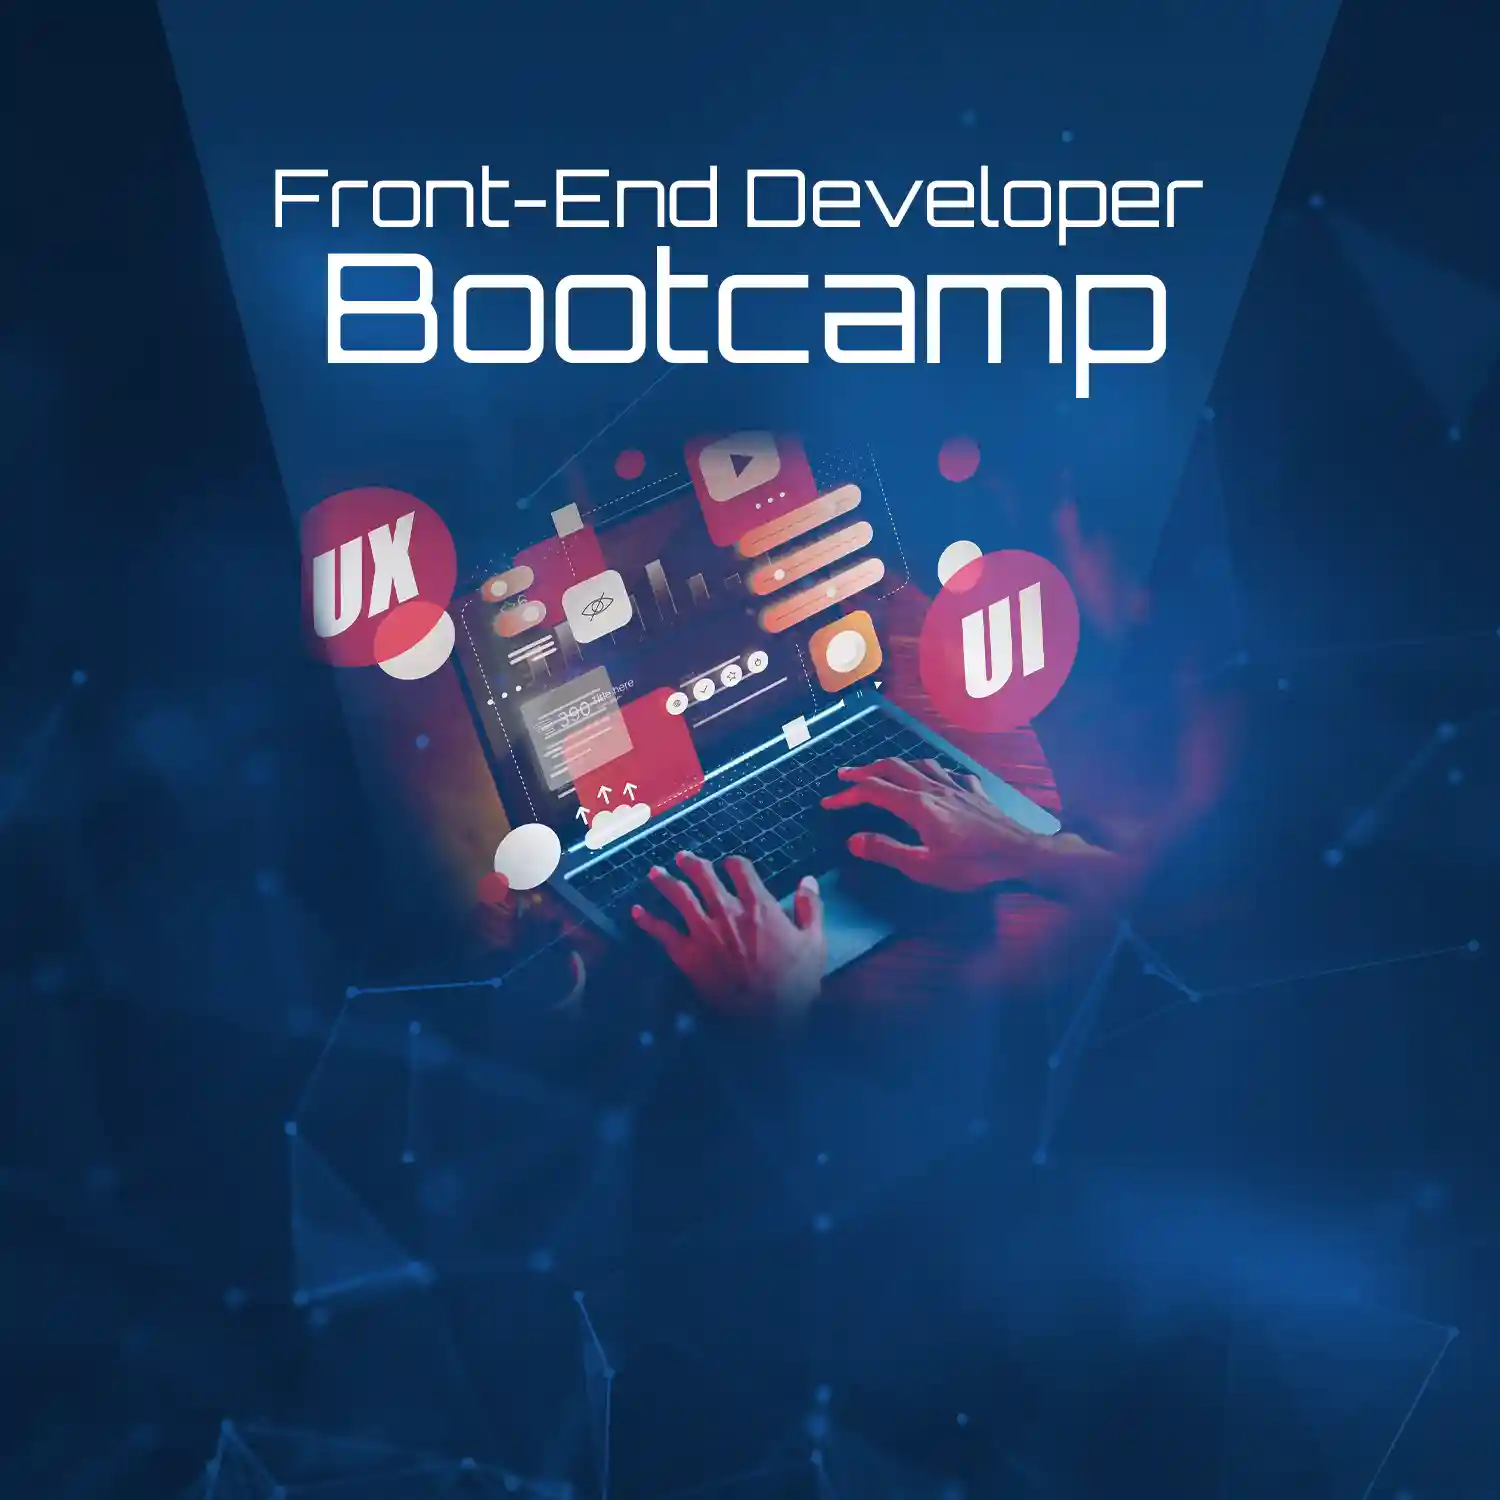 İBB Front-End Developer Bootcamp Programı